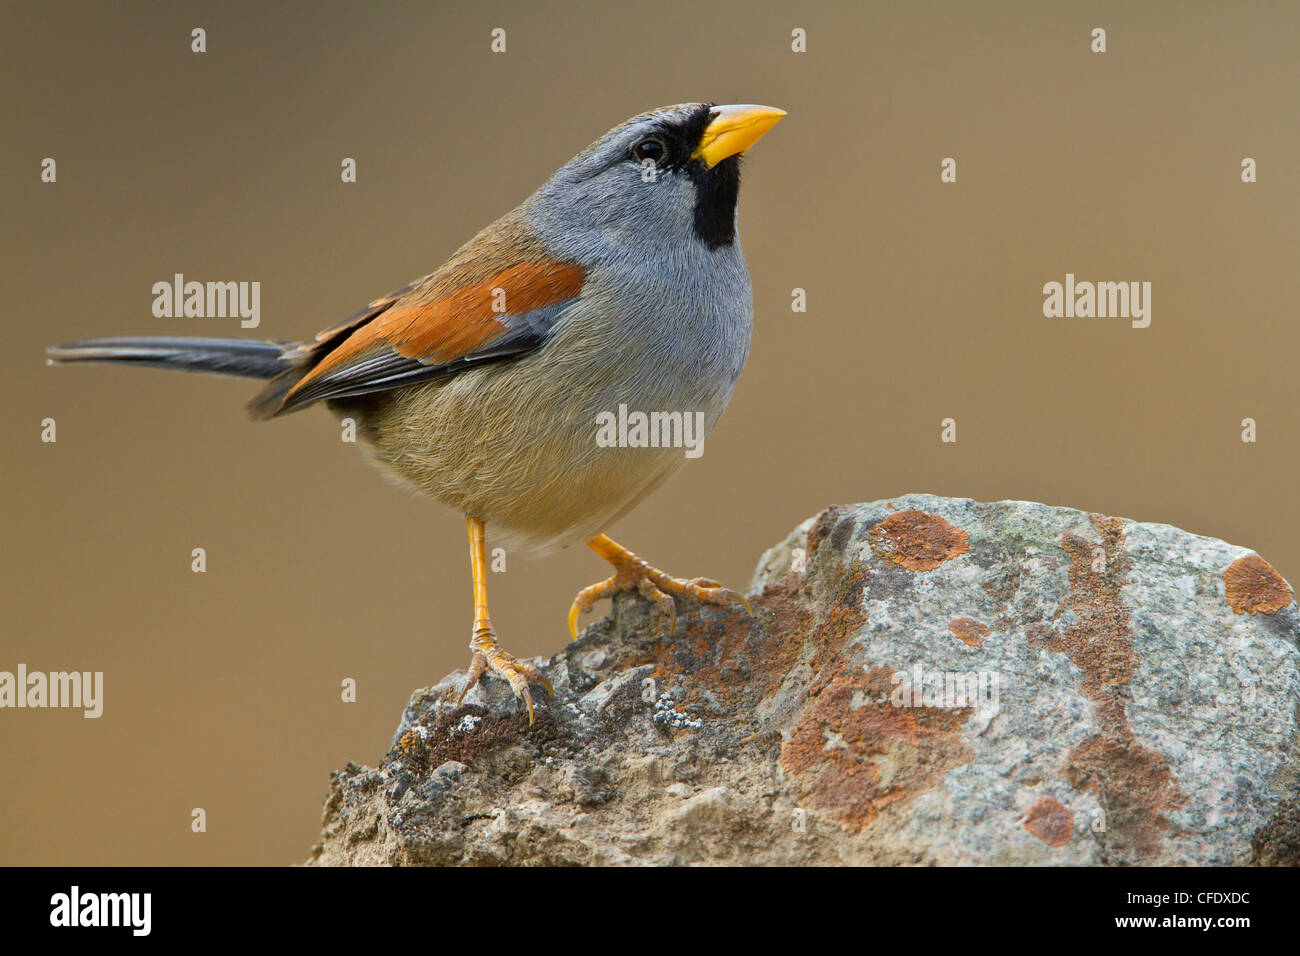 Great Inca-Finch (Incaspiza pulchra) perched on a rock in Peru. Stock Photo